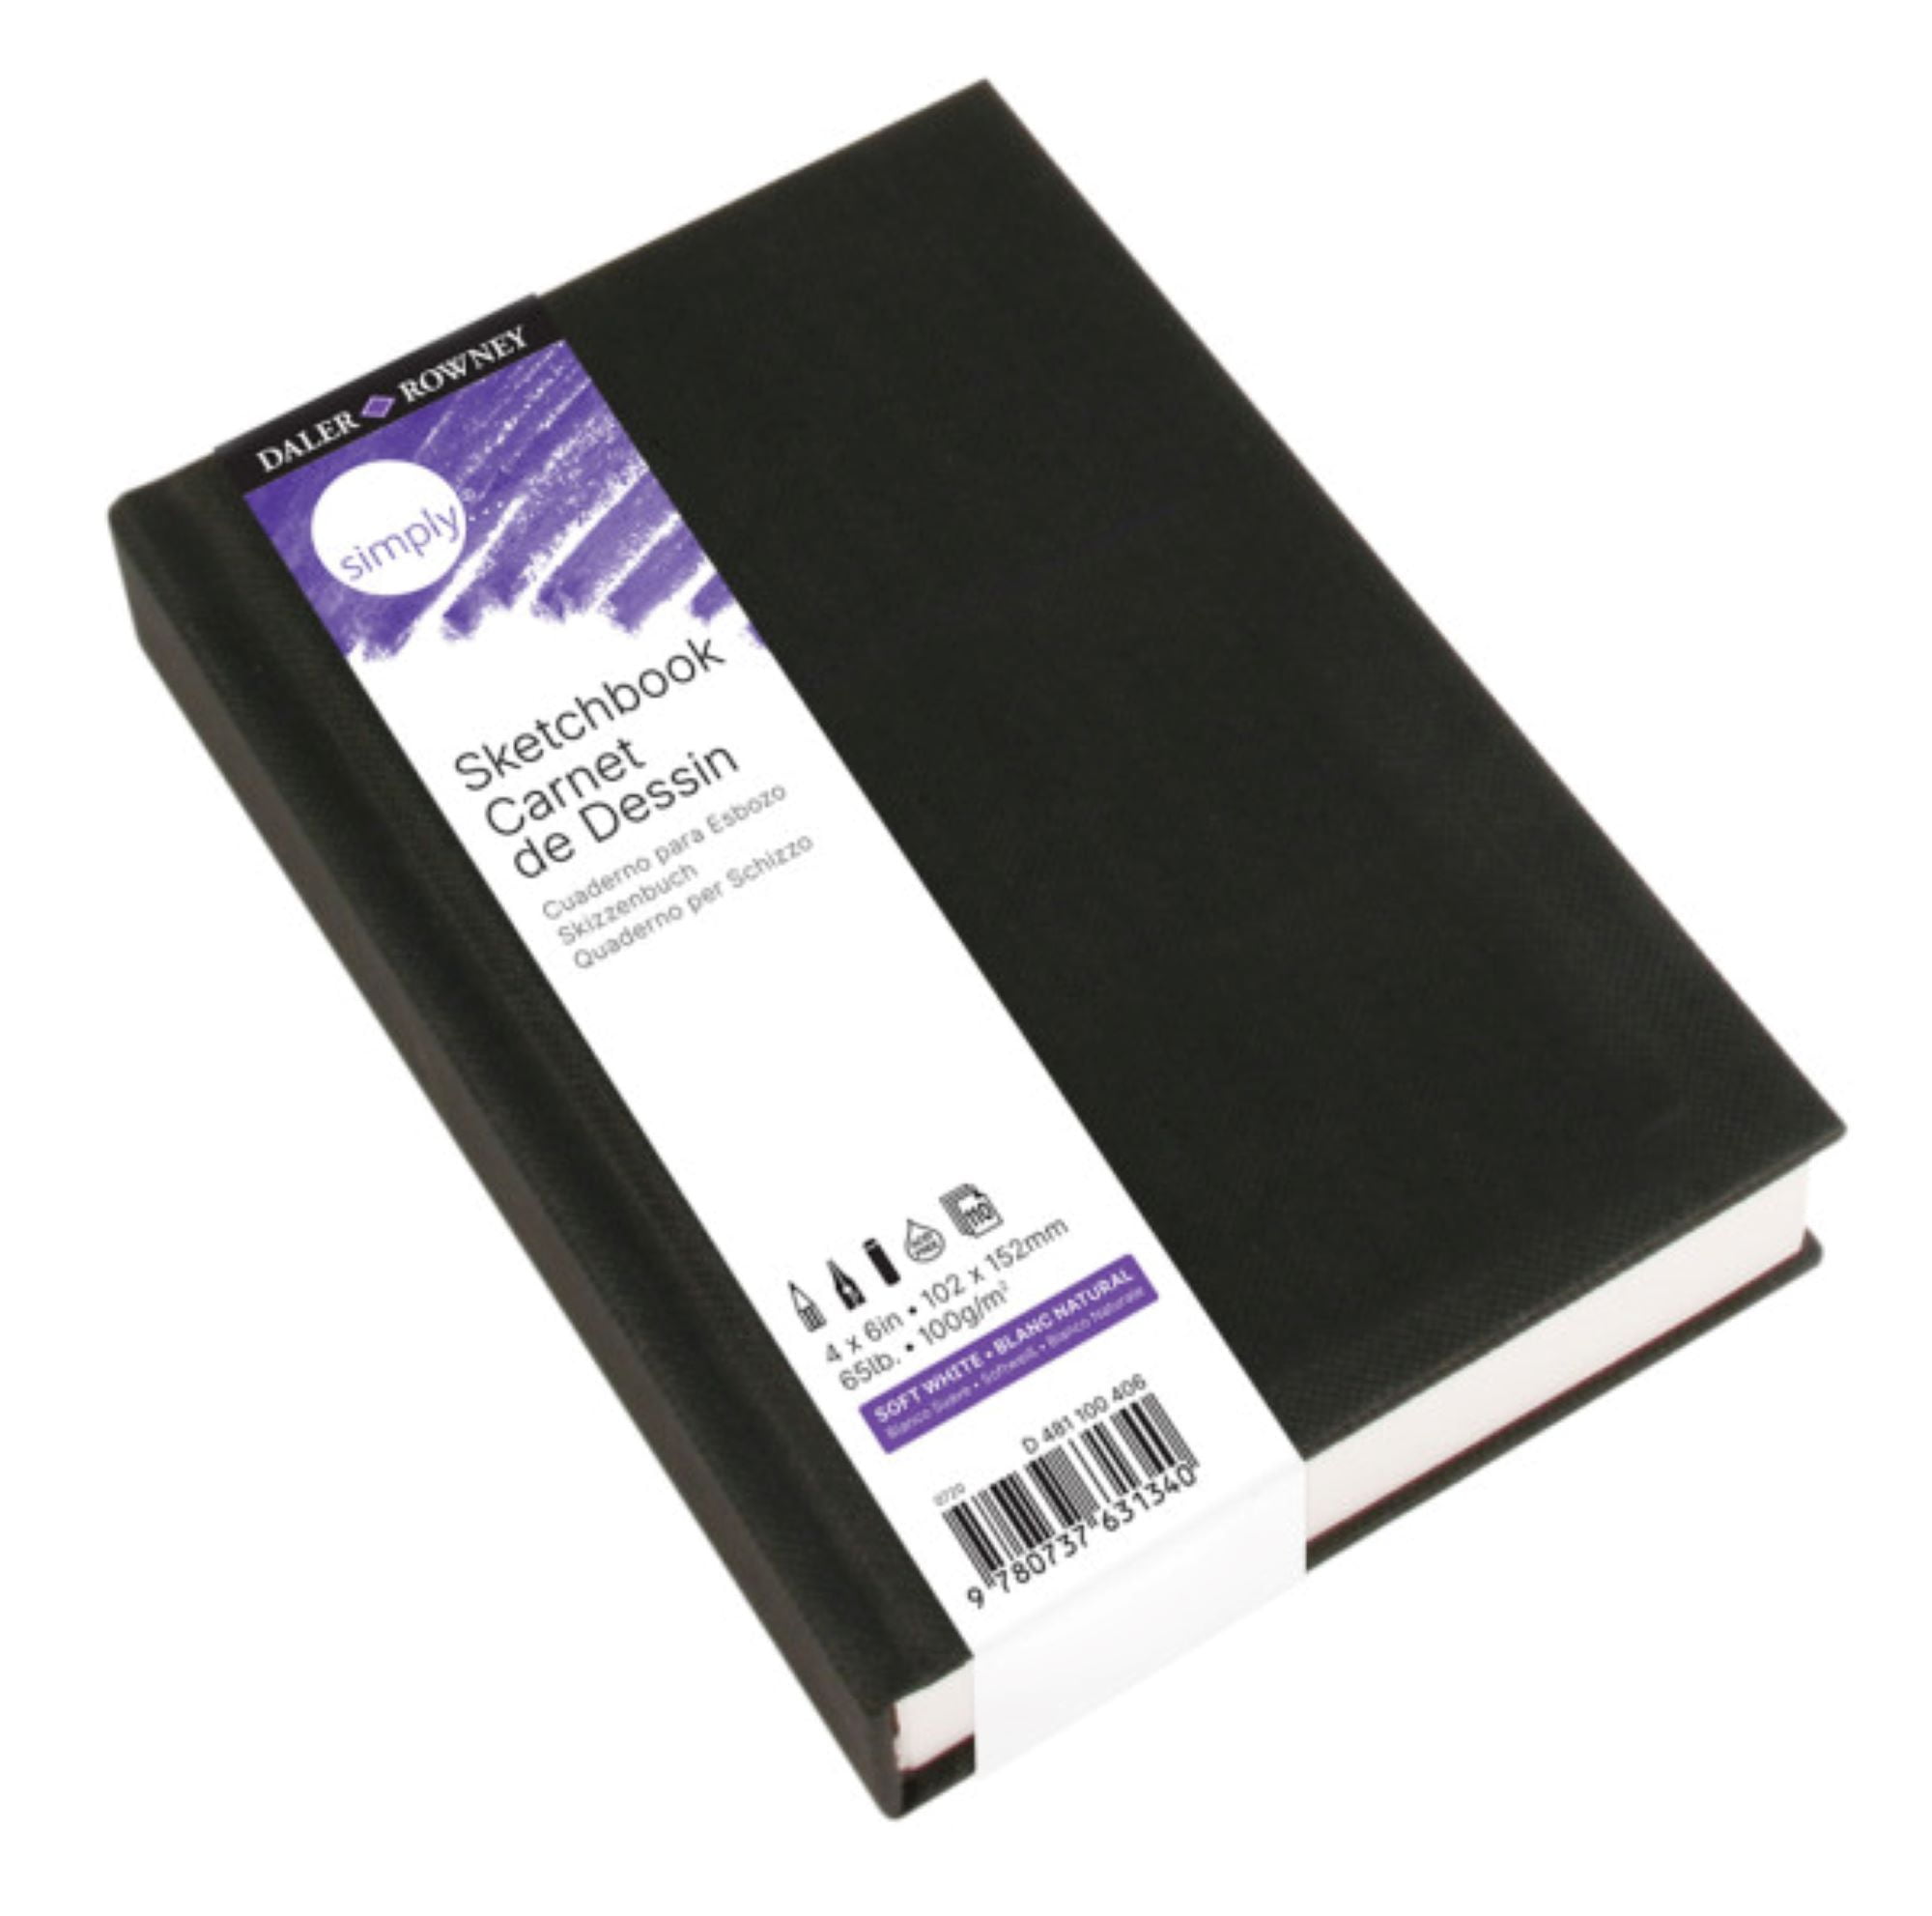 Daler-Rowney Simply Hardbound Sketchbook, Black Cover, Sketch Paper, 4" x 6", 110 Sheets